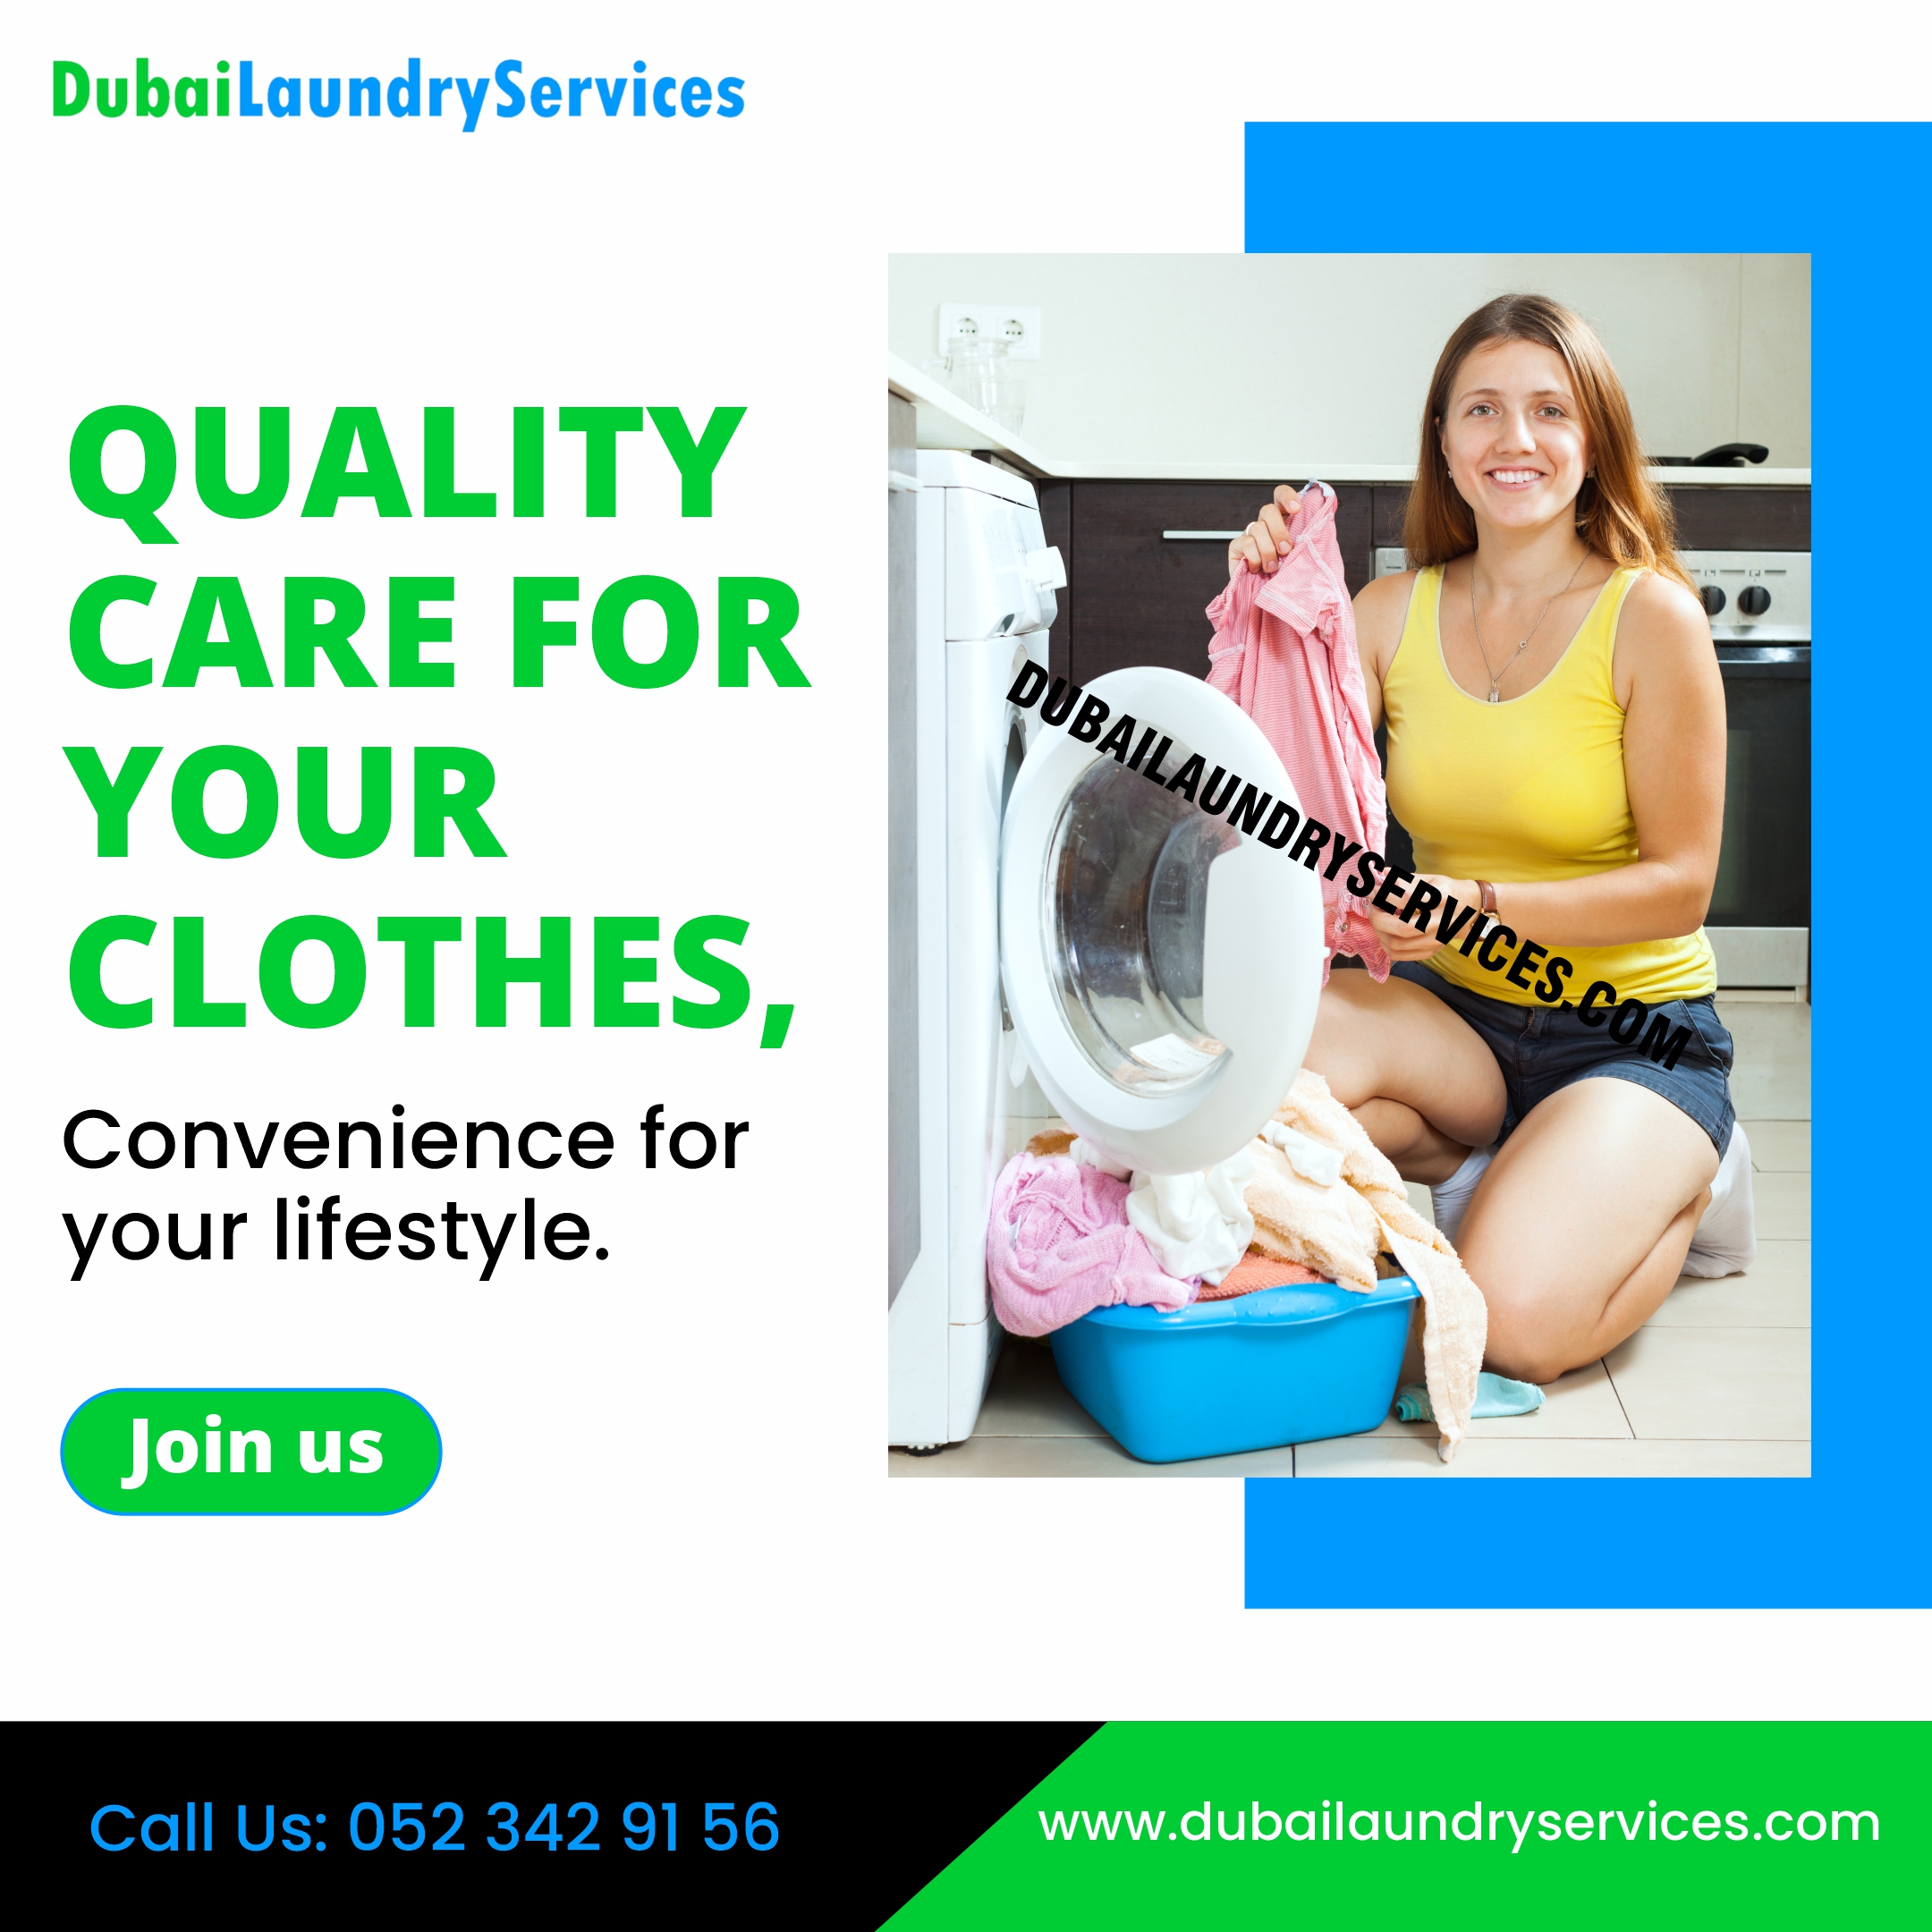 Dubai laundry